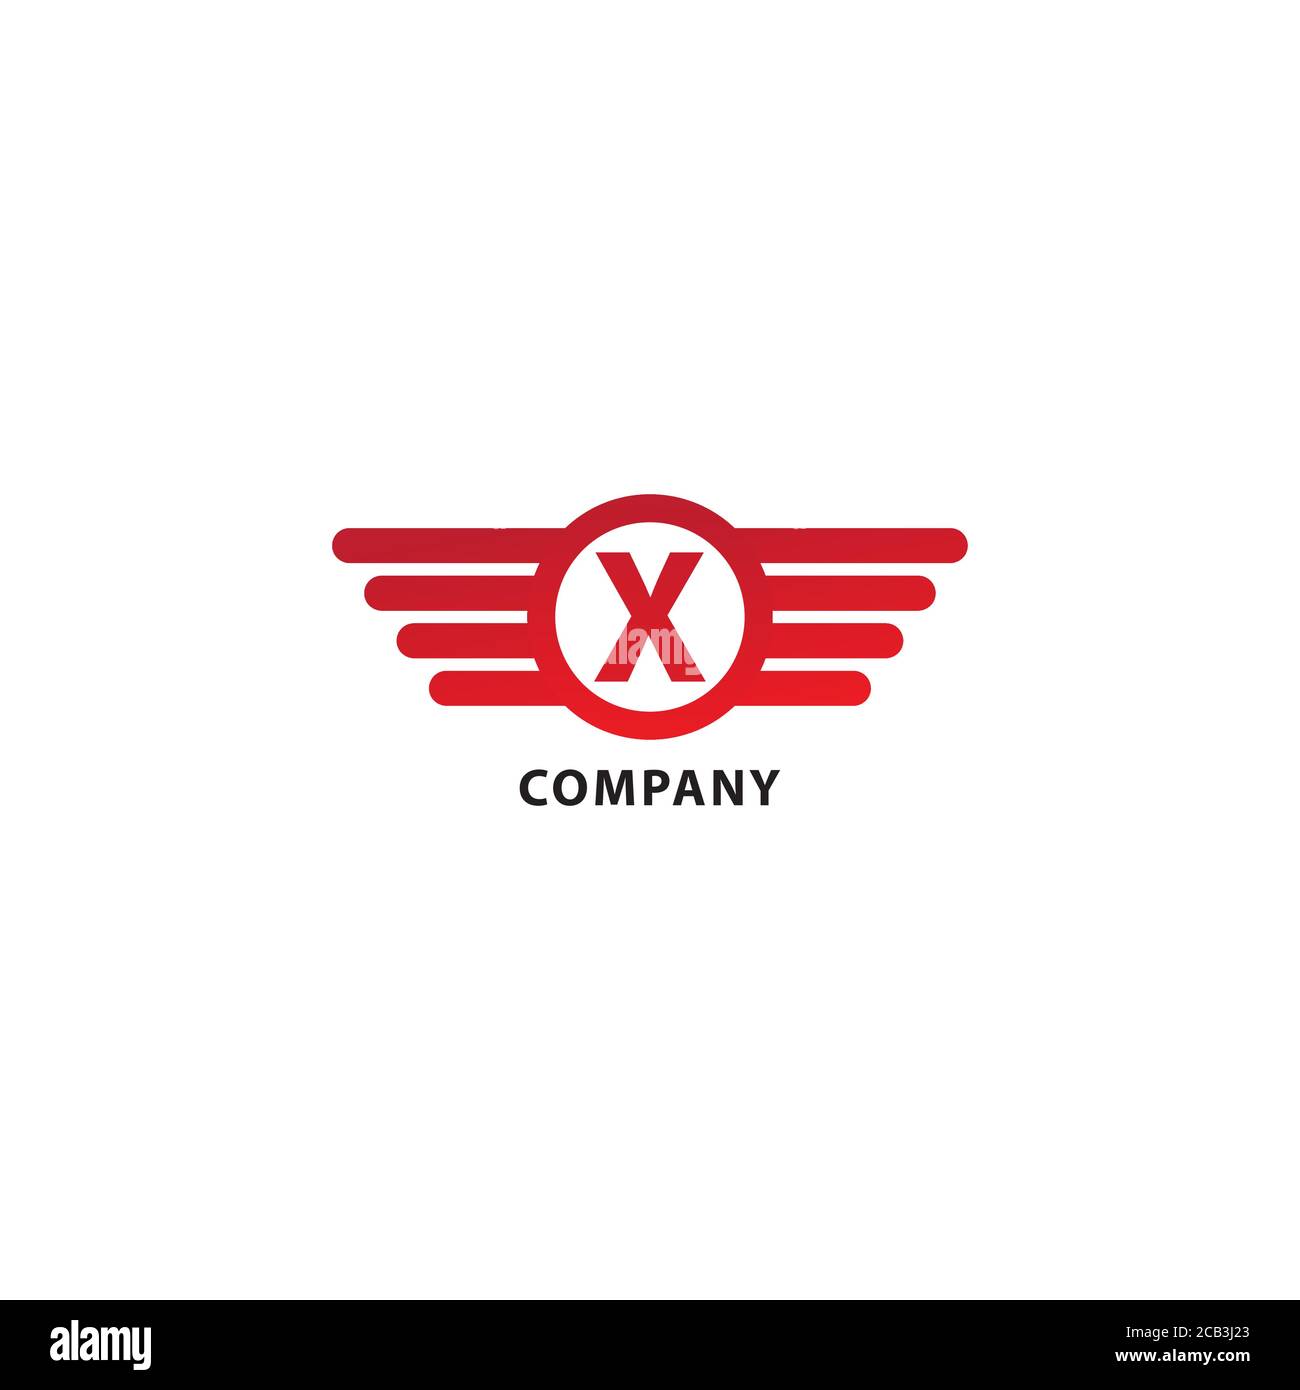 Lettera X modello iniziale di progettazione del logo Abjad. Isolato su sfondo bianco. Ali arrotondate, forma a ellisse e logo Alfabeto. Tema colore rosso. Illustrazione Vettoriale